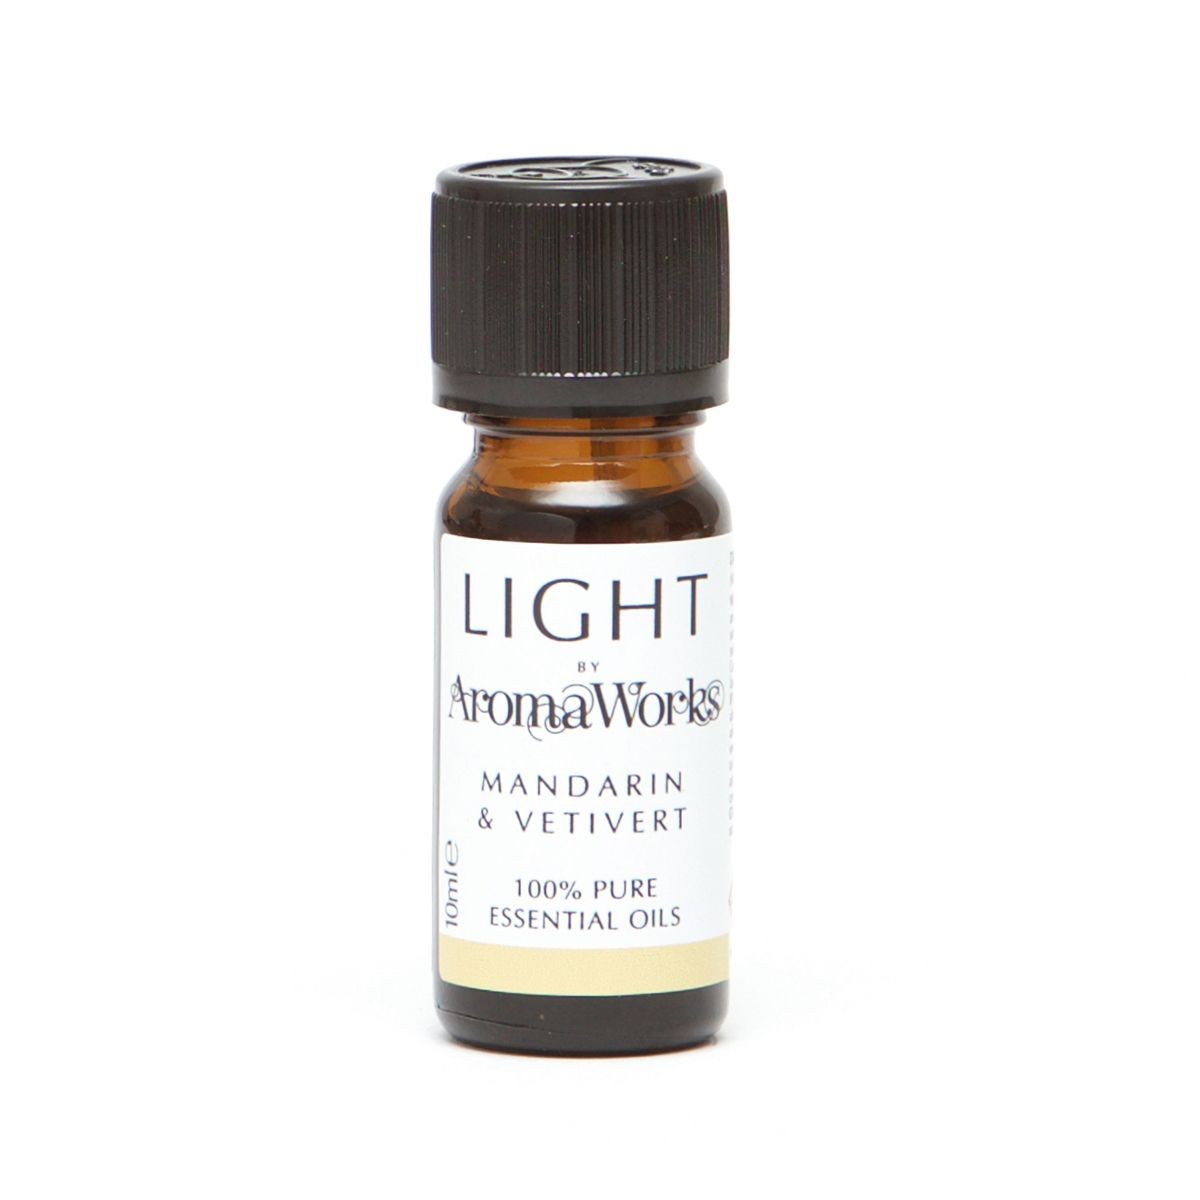 Aromaworks Light Range Mandarin & Vetivert Essential Oil 10ml